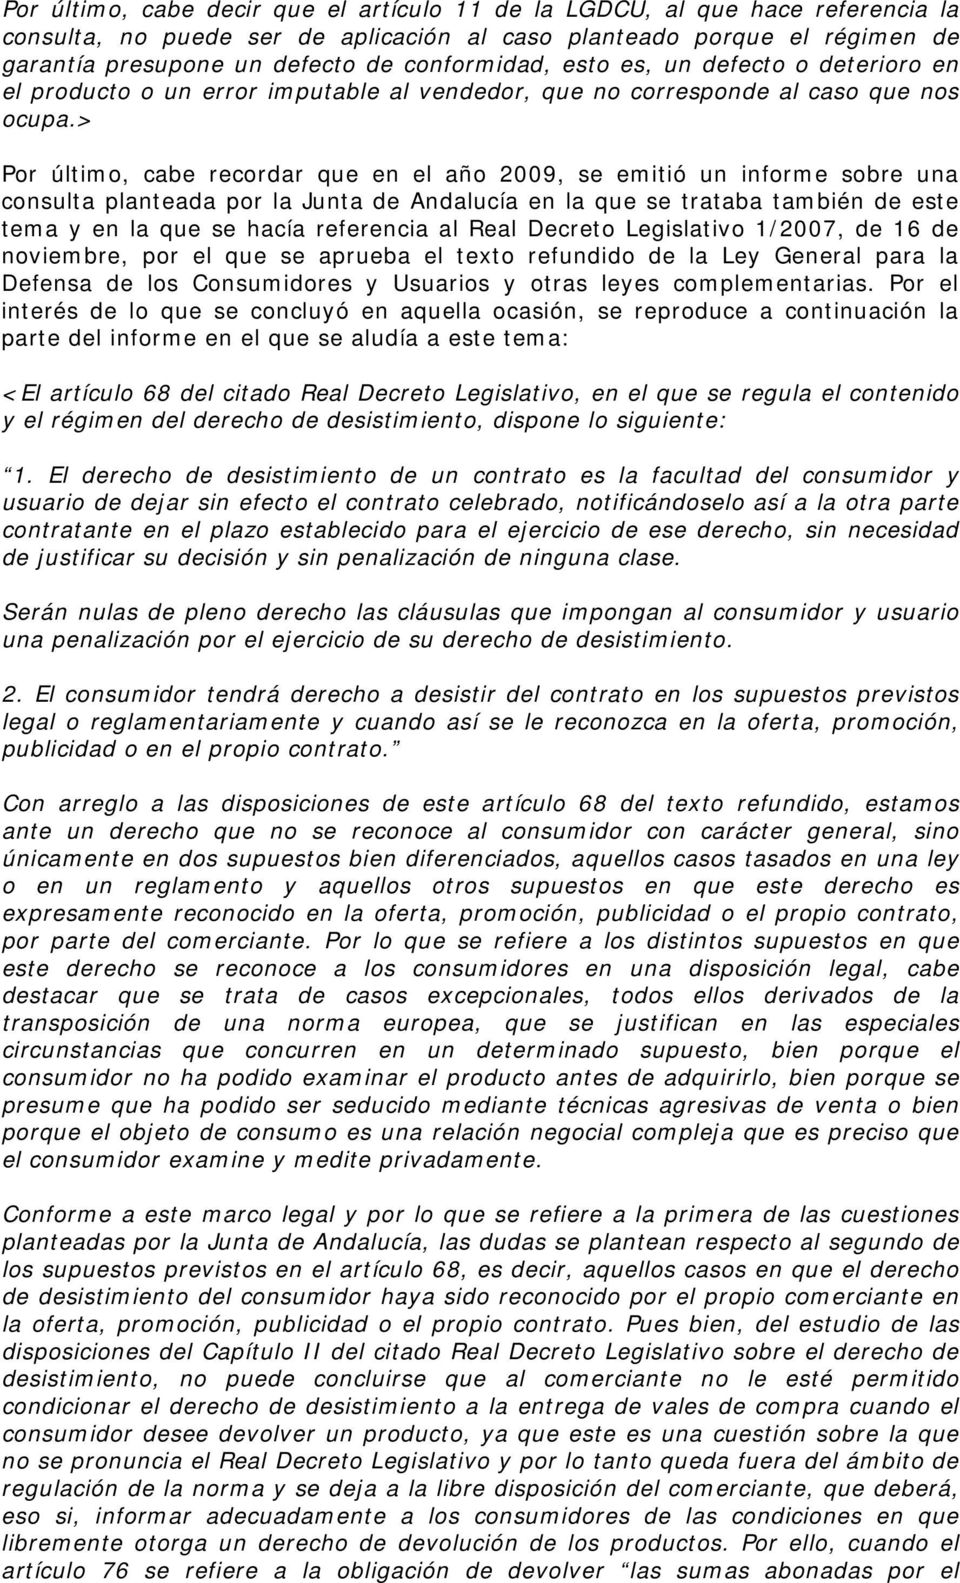 > Por último, cabe recordar que en el año 2009, se emitió un informe sobre una consulta planteada por la Junta de Andalucía en la que se trataba también de este tema y en la que se hacía referencia